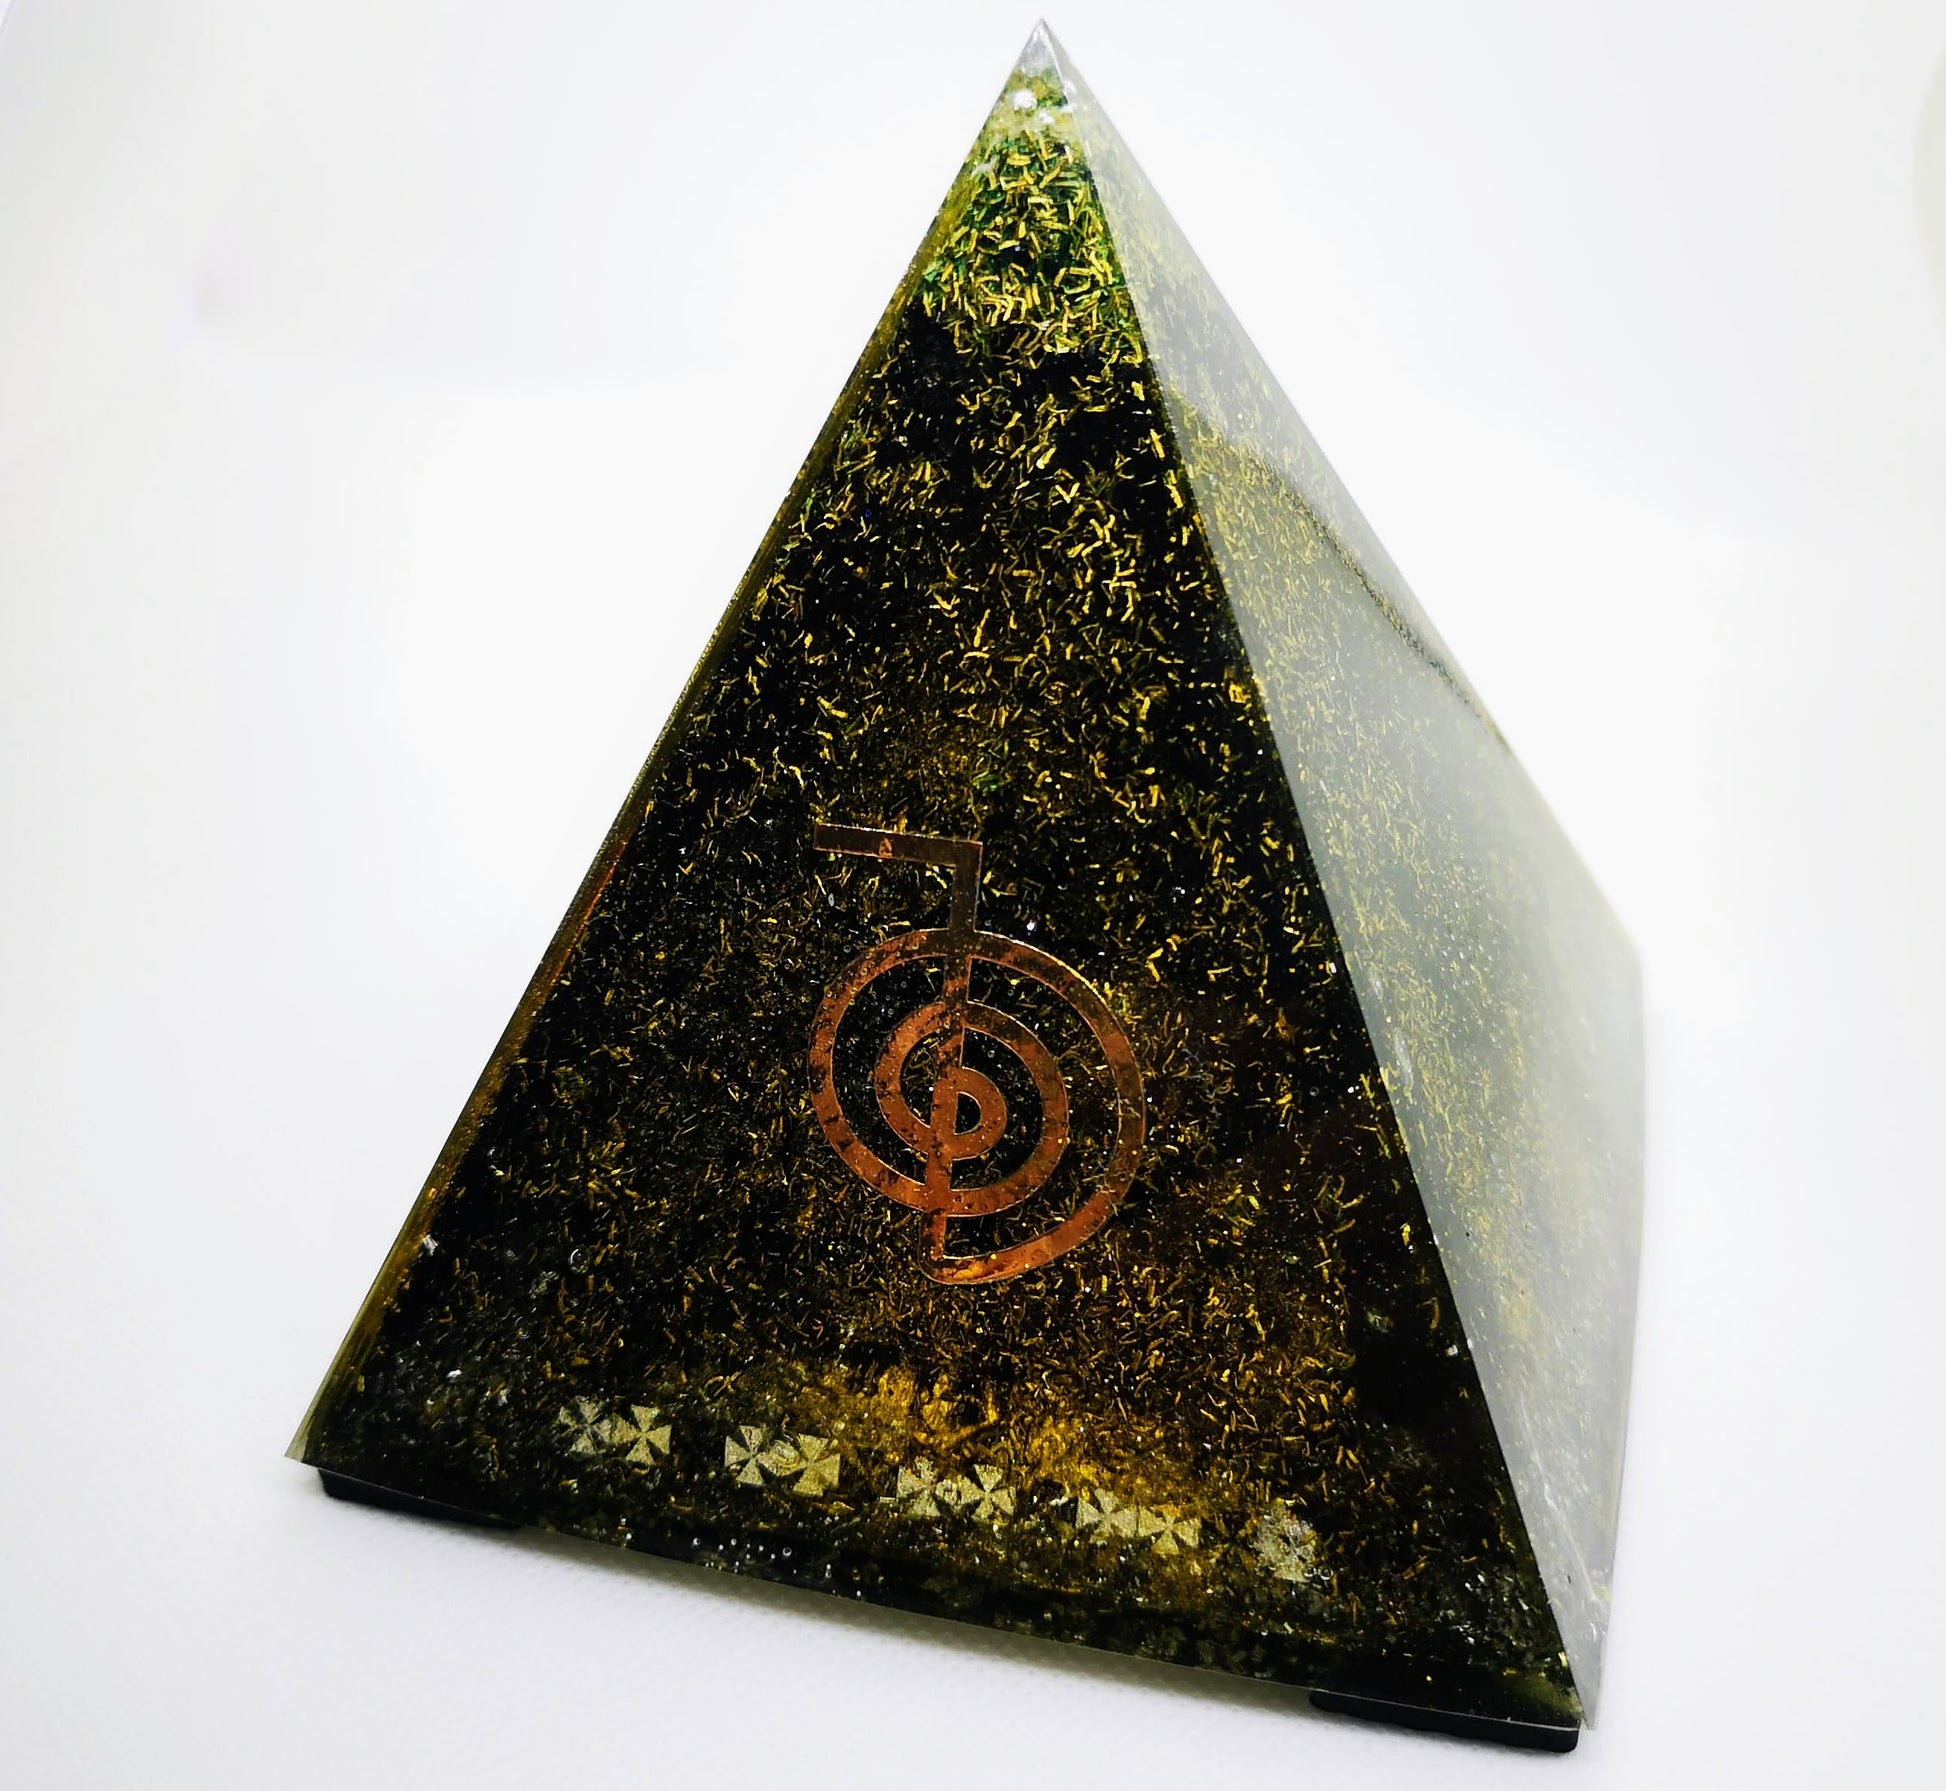 Große Pyramide (500 ml) aus reinem Orgonit mit dem Choku-Rei-Symbol auf einer ihrer Seiten und innen schwarzem Turmalin und Schungit (Fragmente und Staub)